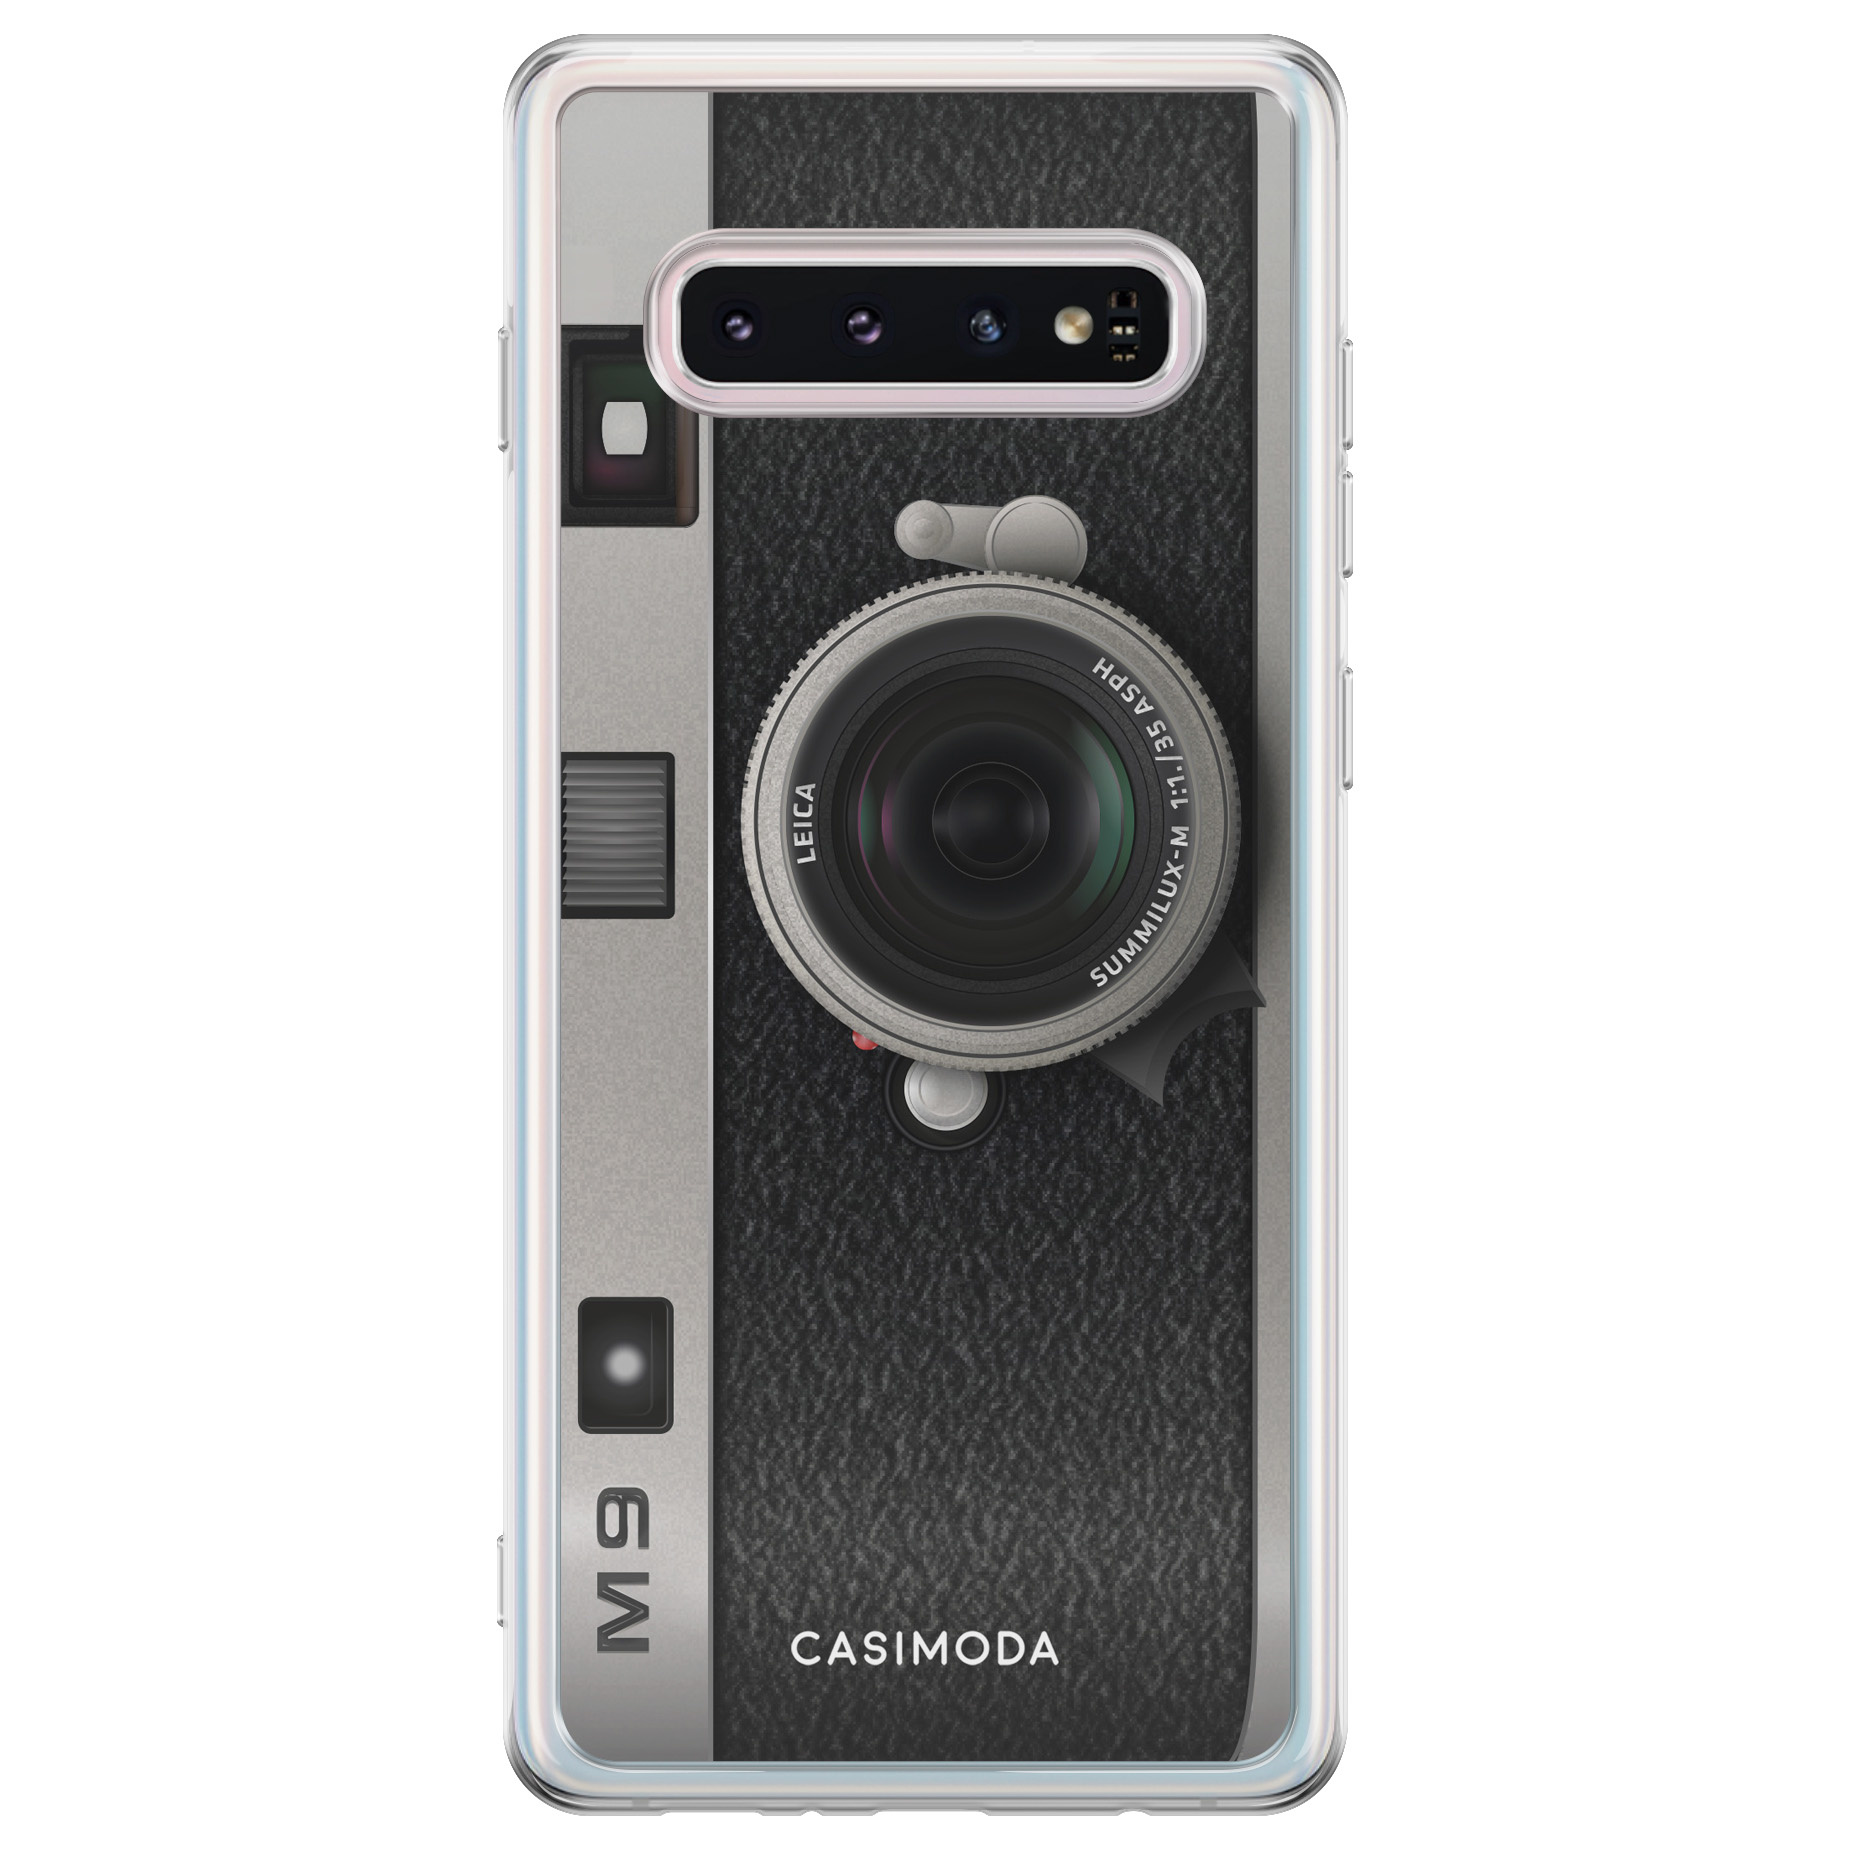 Schrijft een rapport Portier Poging Camera hoesje voor Samsung Galaxy s10 online kopen - Casimoda.nl